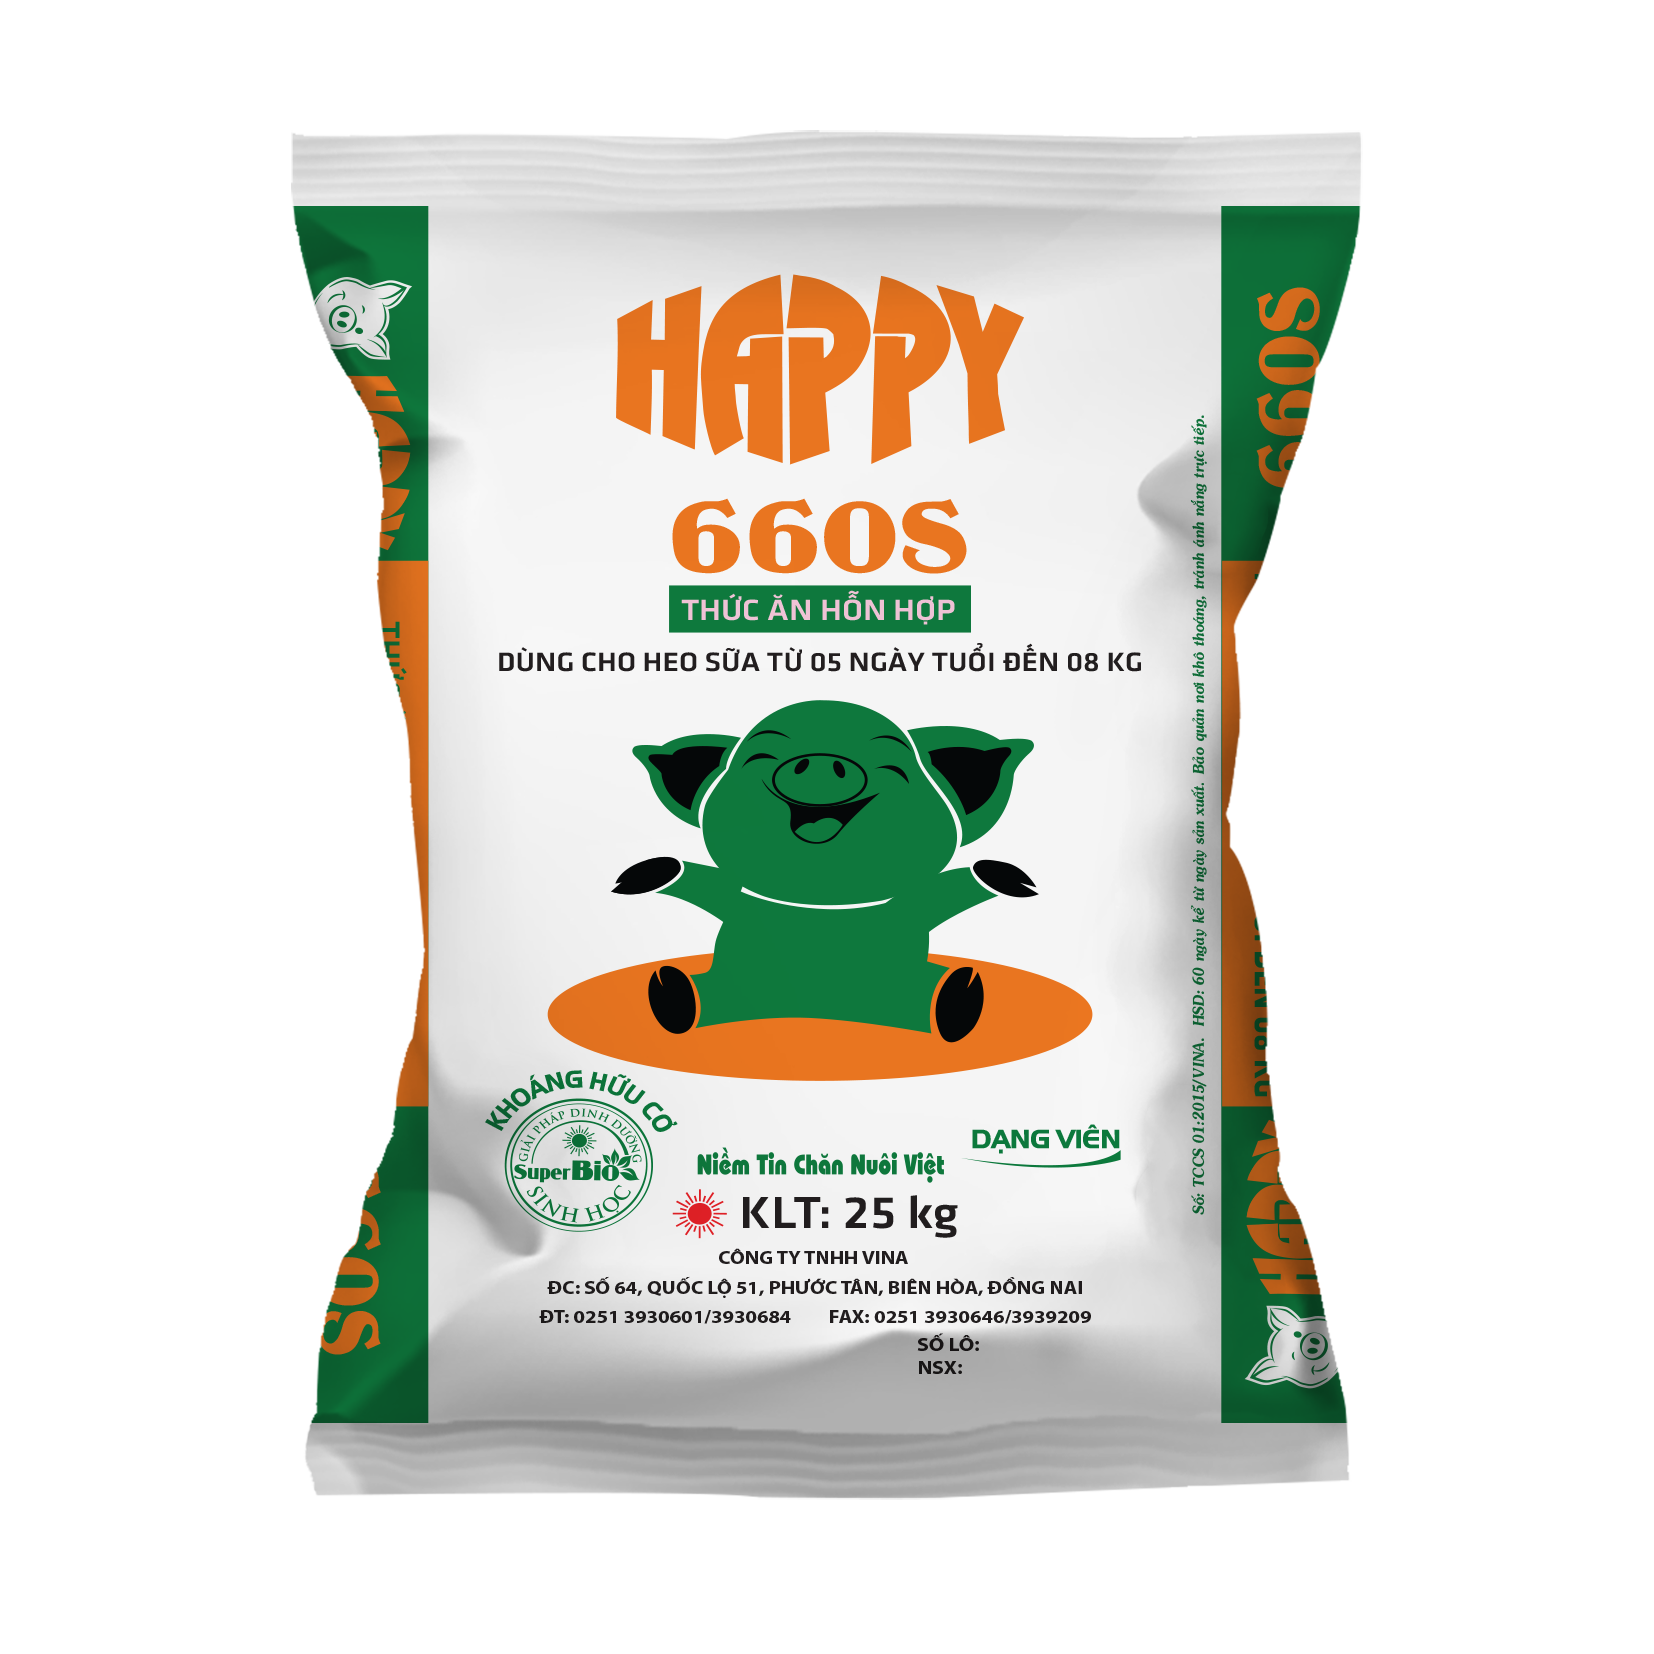 HAPPY 660S